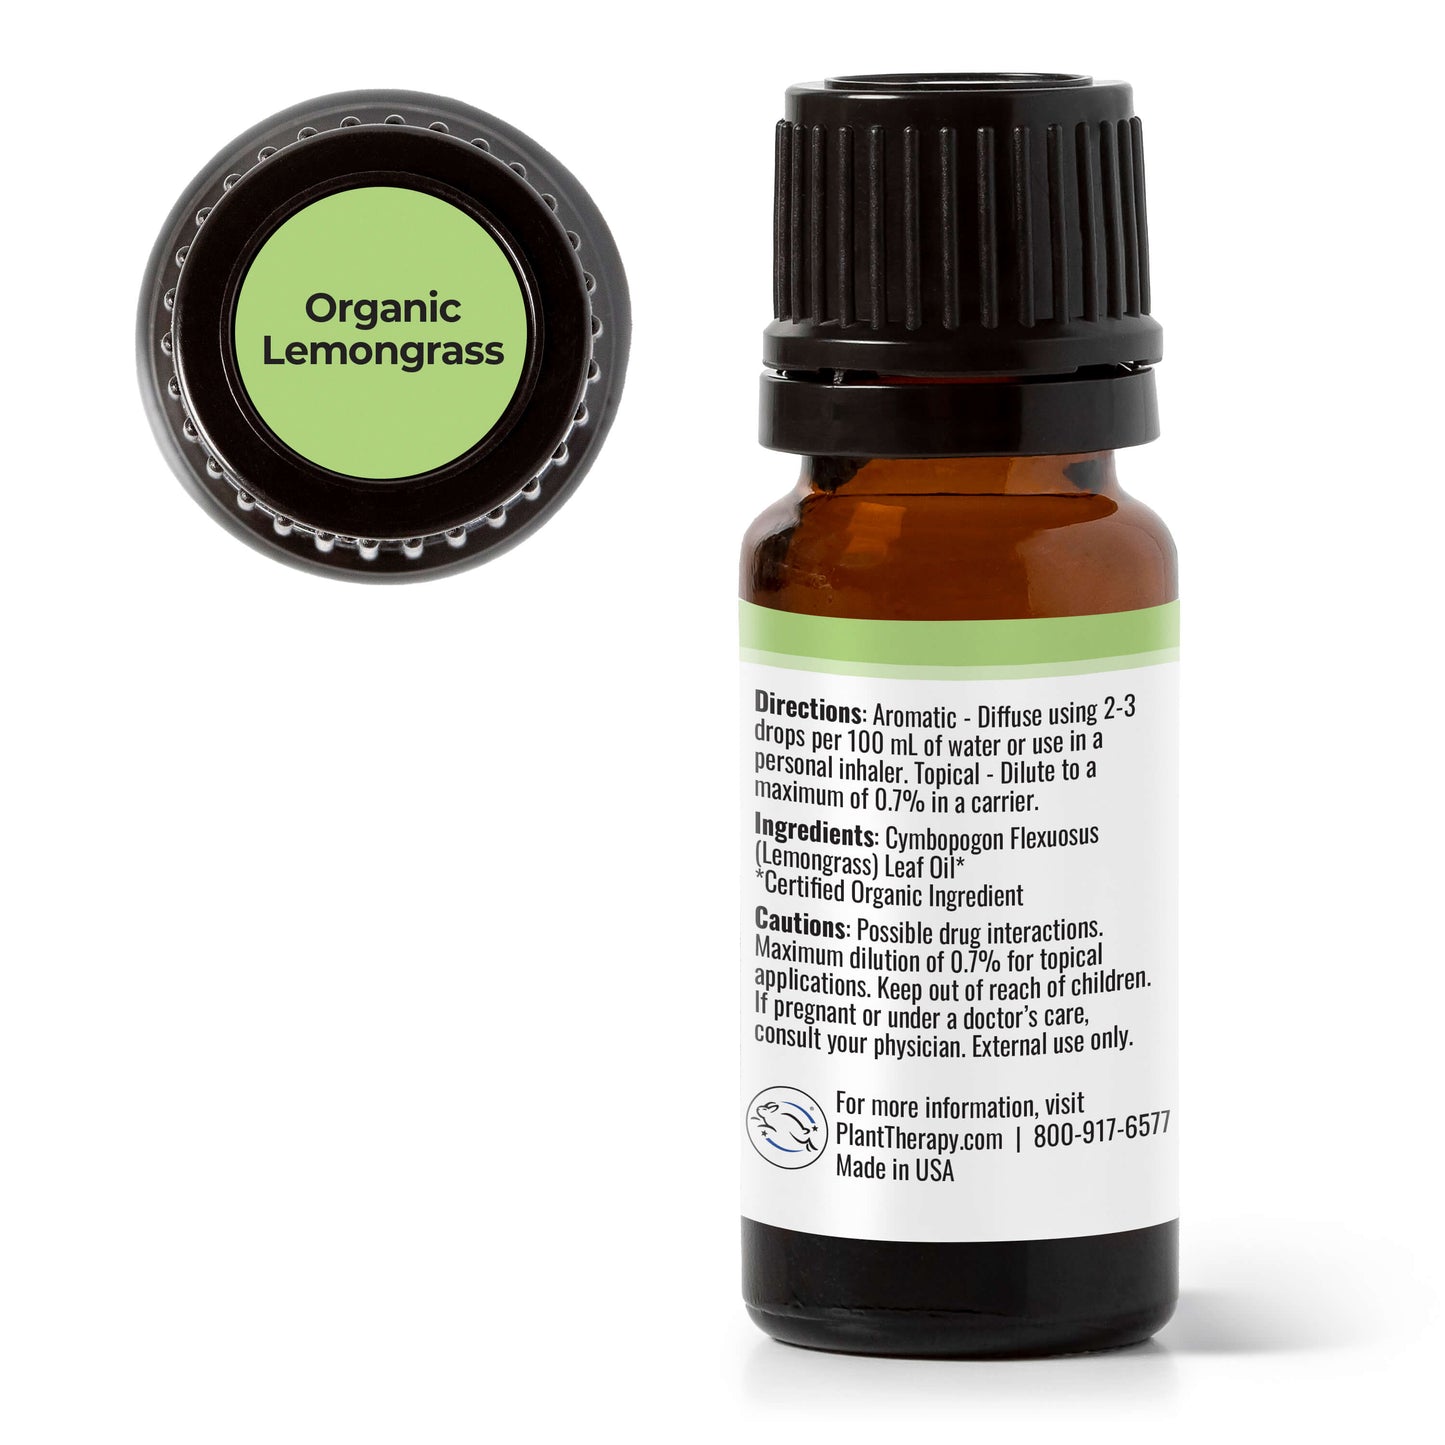 Organic Lemongrass Essential Oil - Get Natural Essential Oils